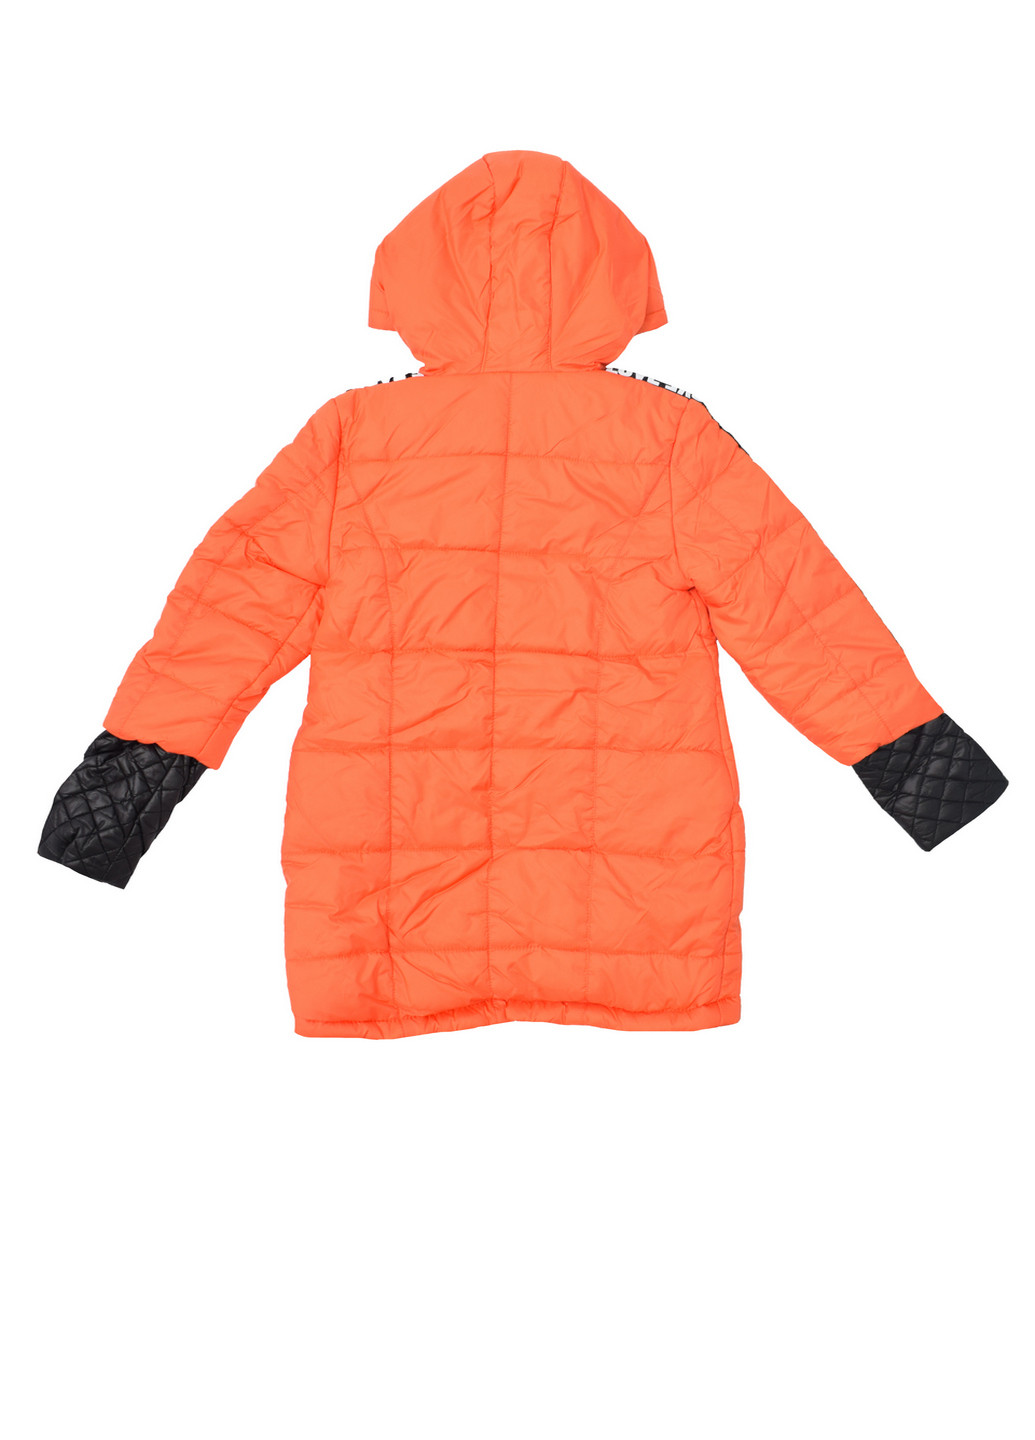 Оранжевая демисезонная куртка для девочки демисезонная Luxik